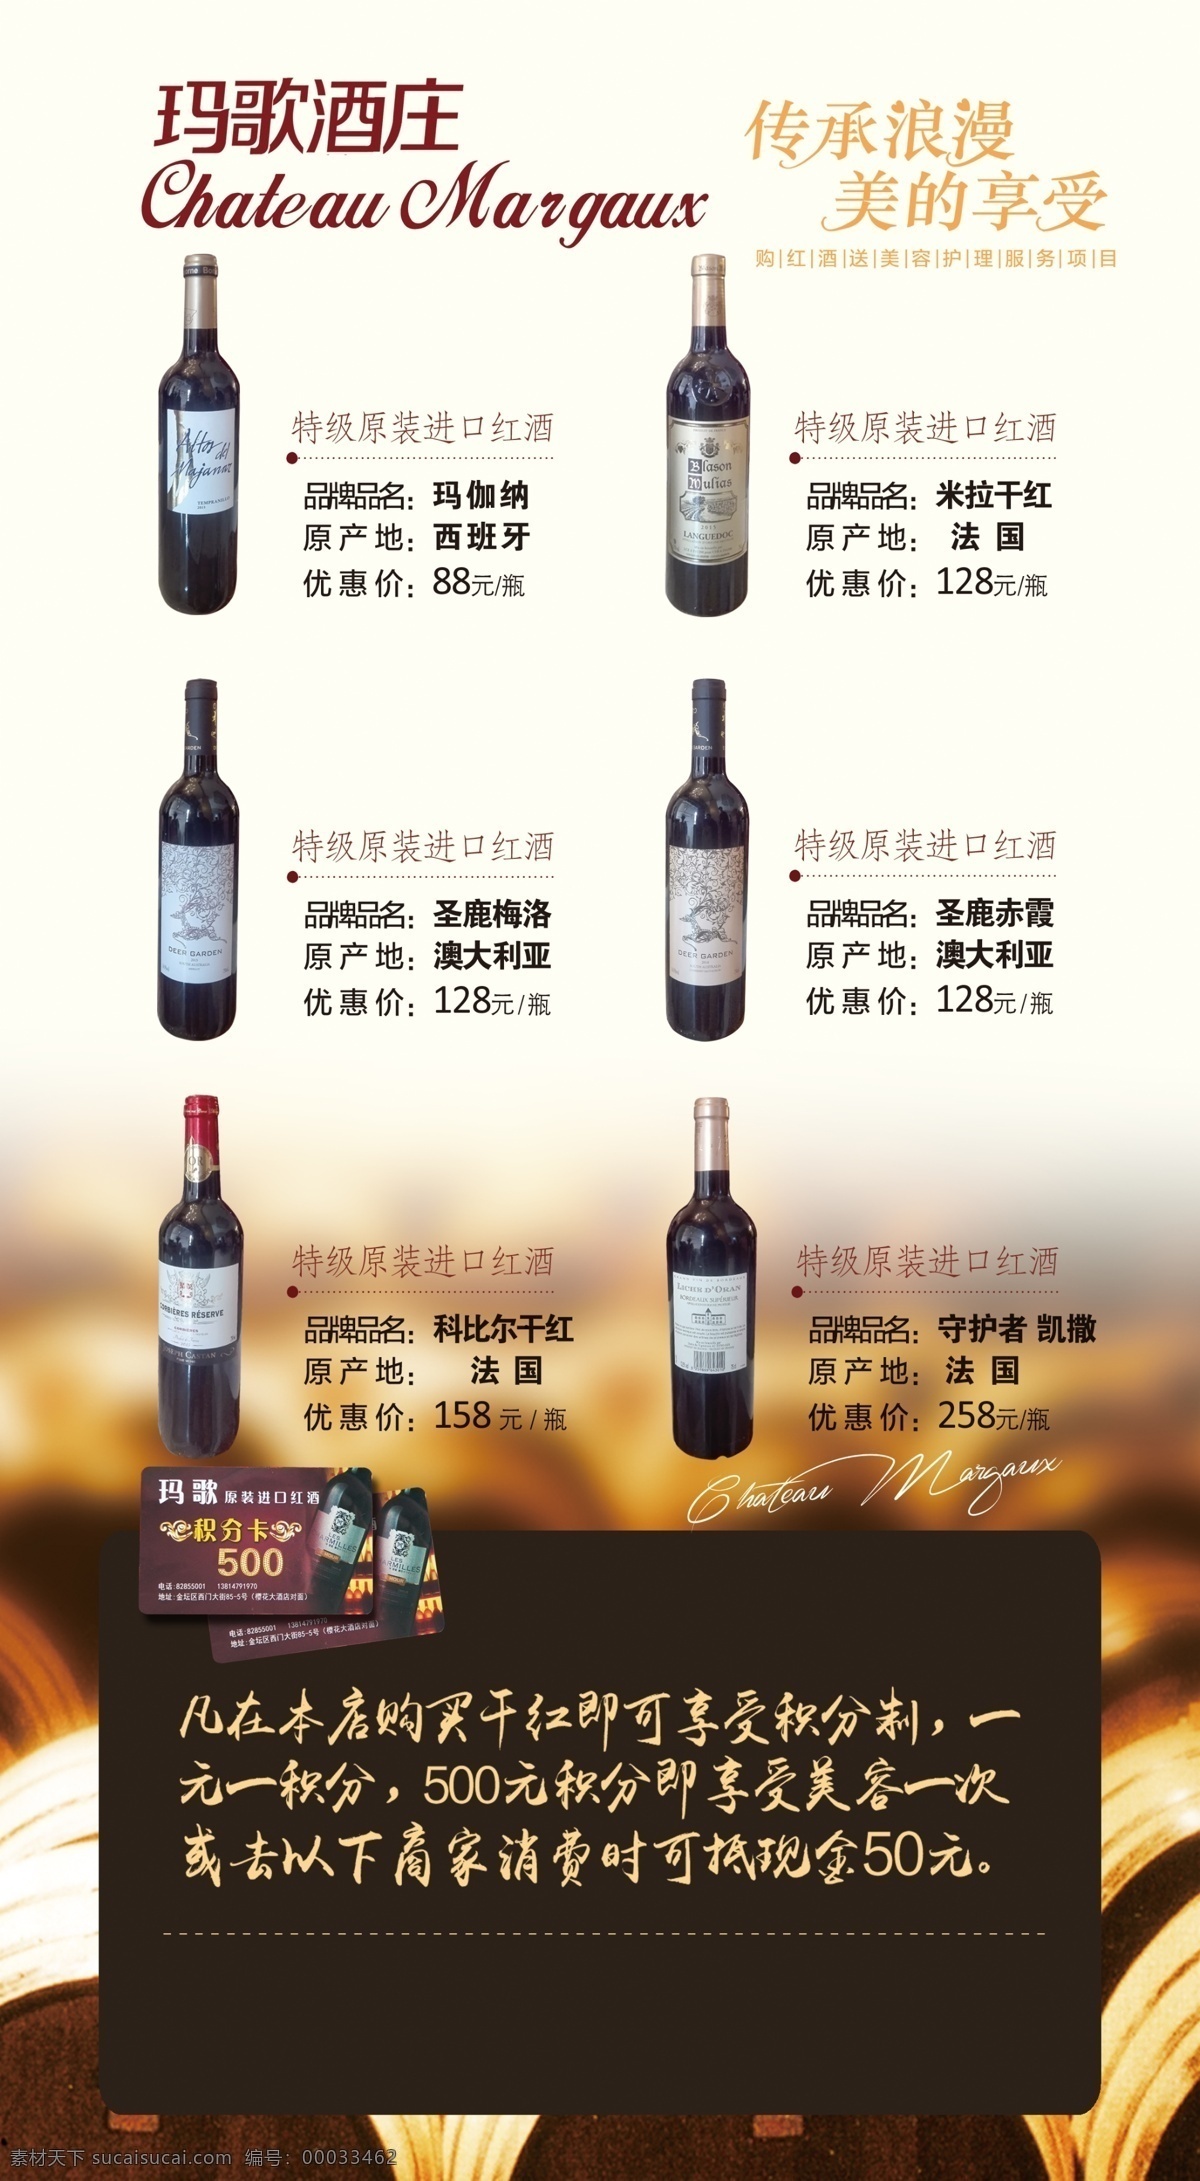 红酒宣传卡 红酒 酒窖 高档酒类 宣传卡 打折卡 优惠卡 会员优惠 dm宣传单